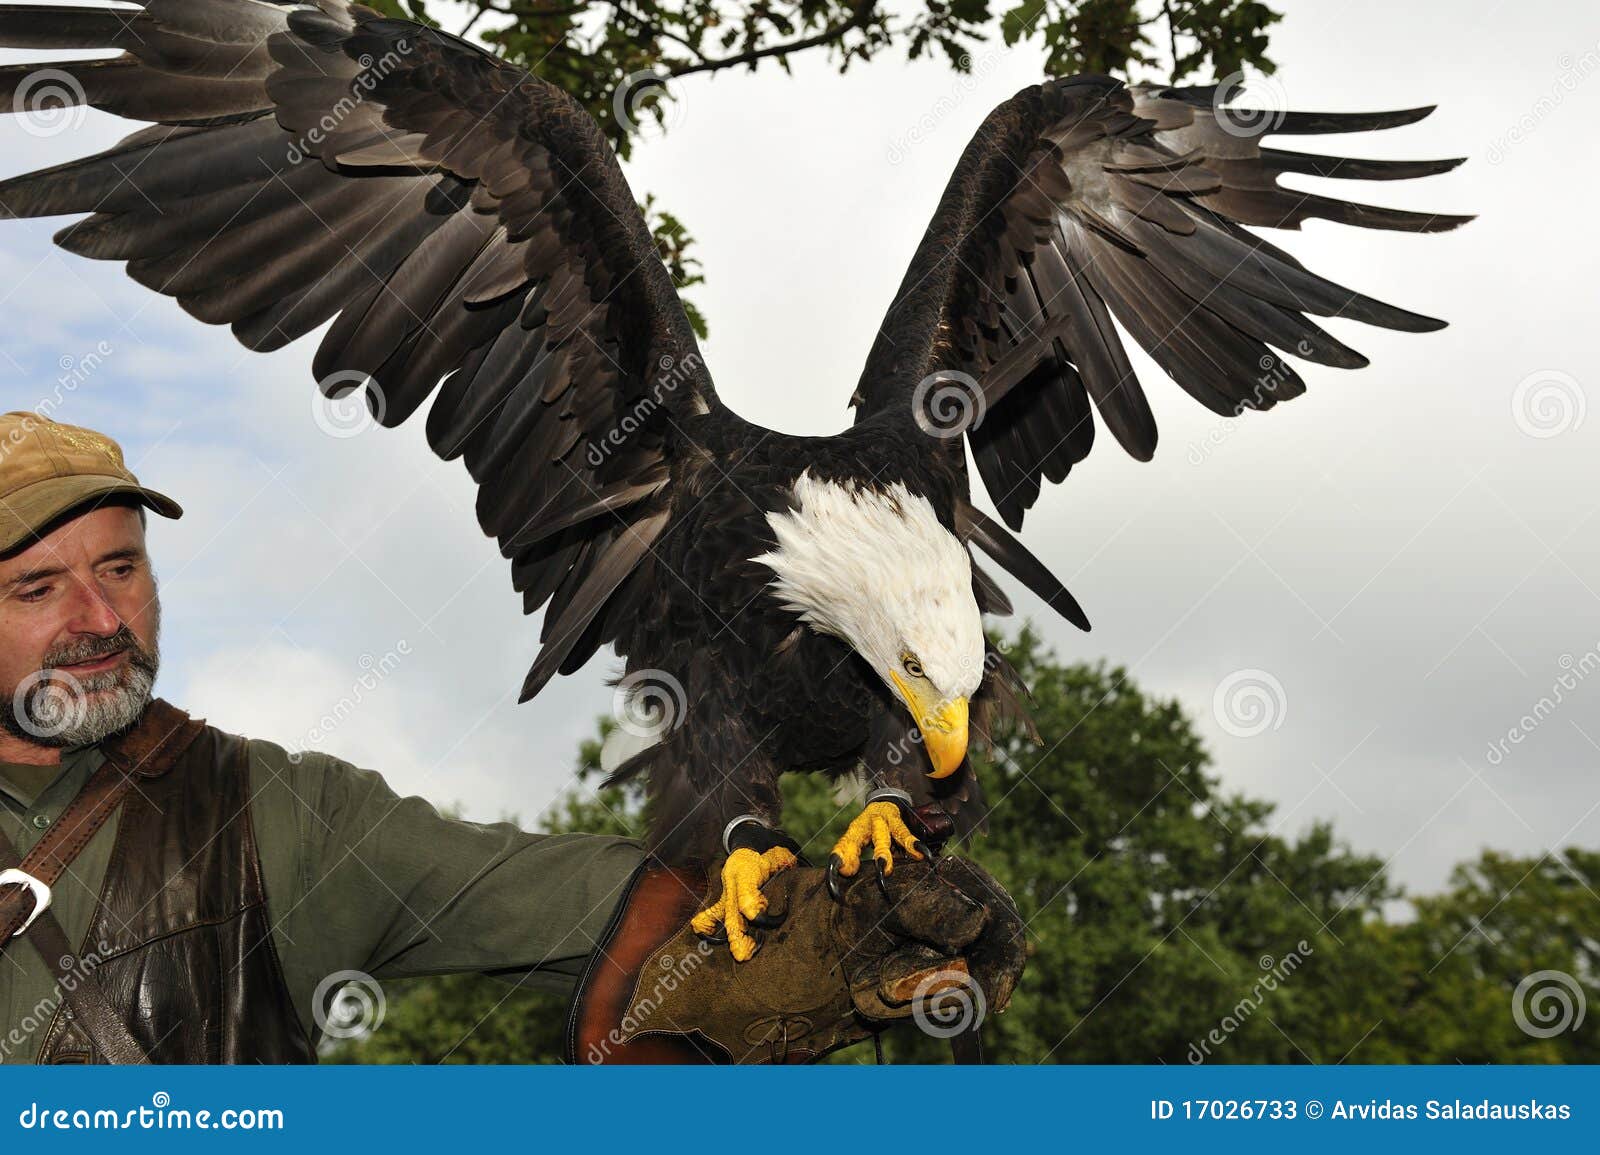 Bald Eagle Eating Meat